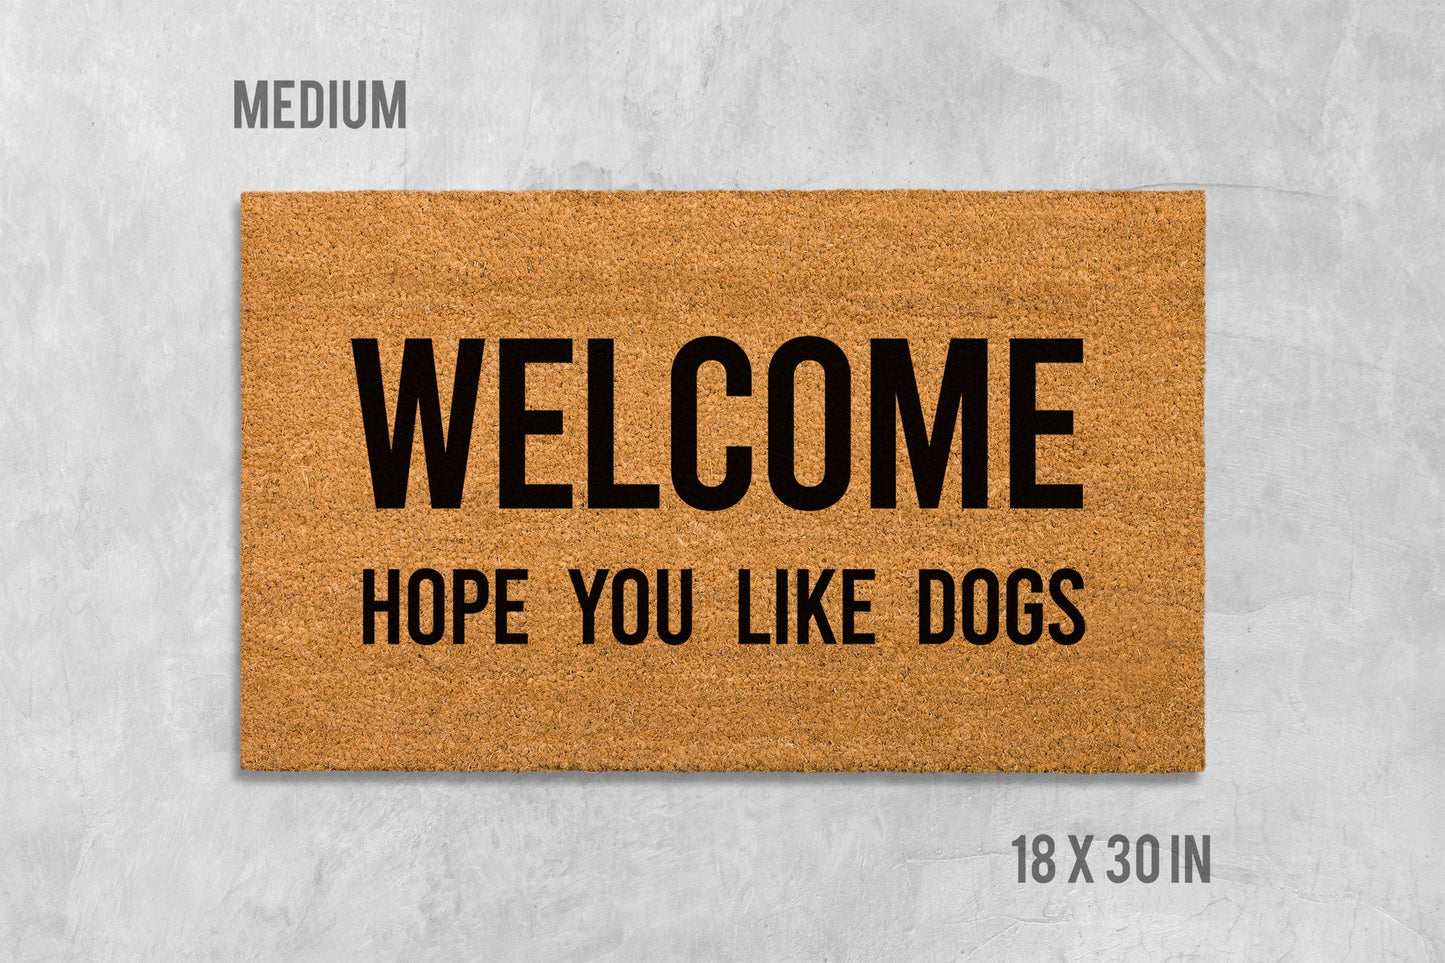 Welcome - Hope You Like Dogs